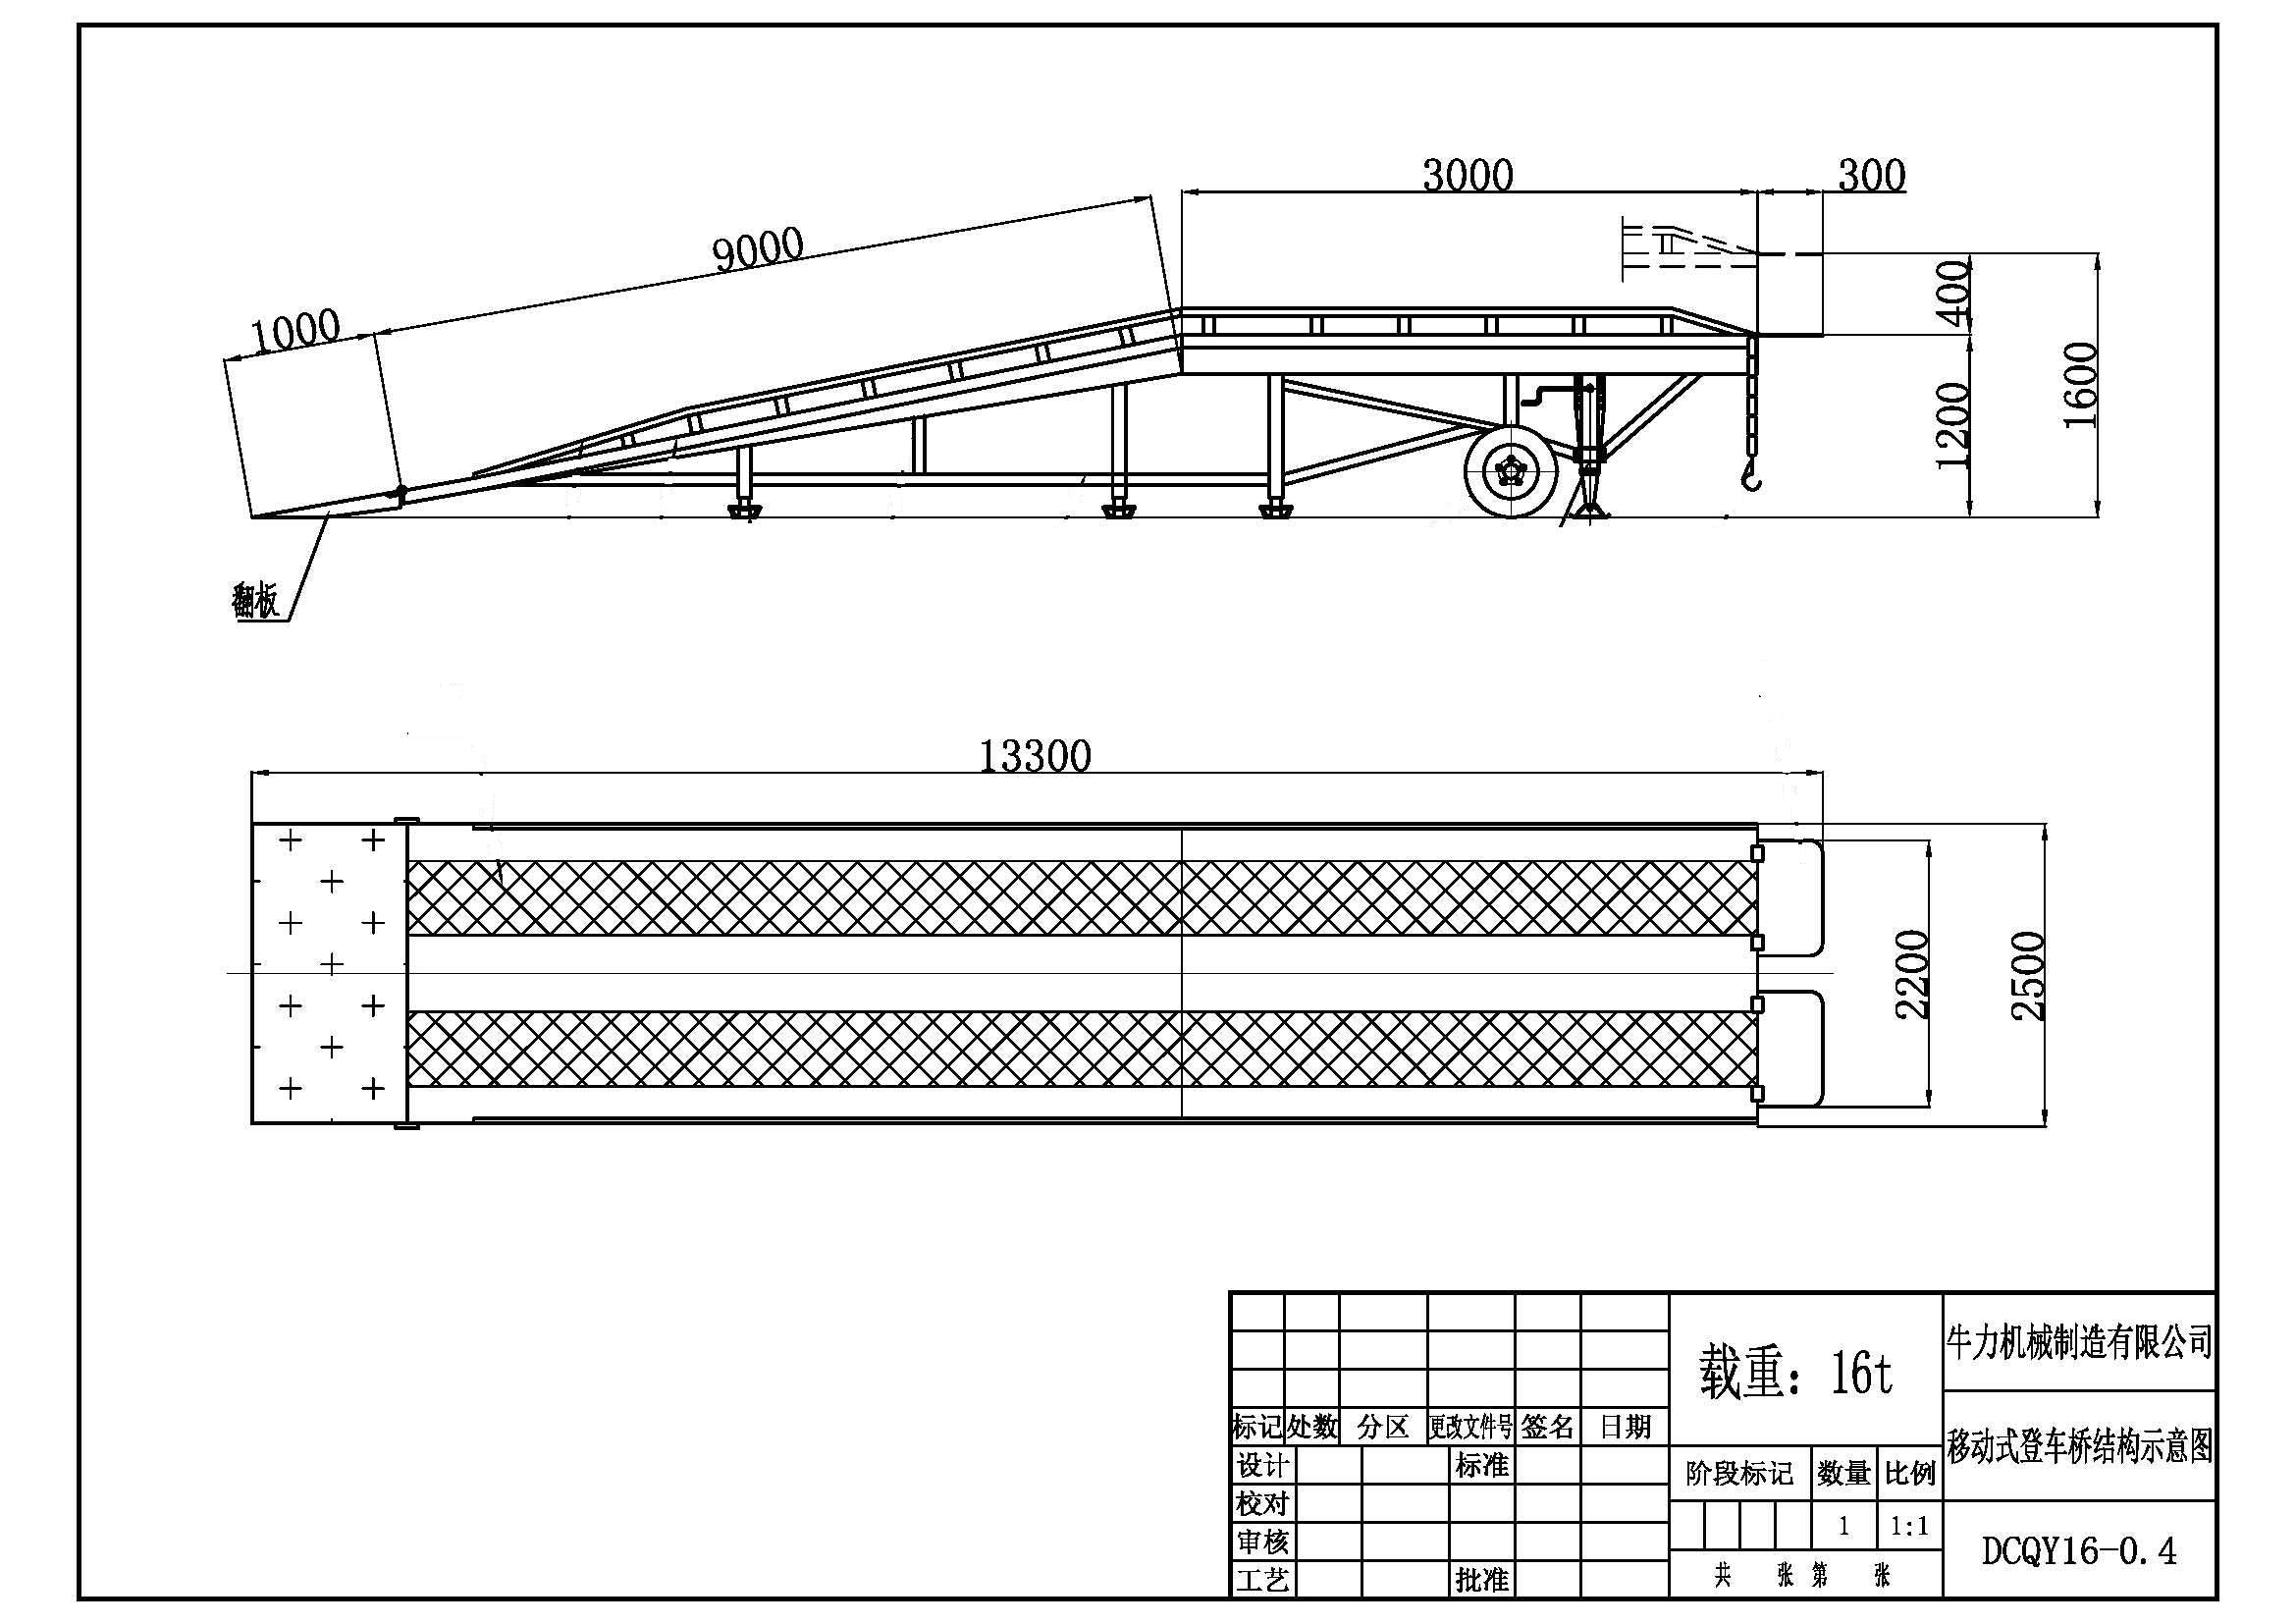 Niuli 16 tonne yard ramp drawing